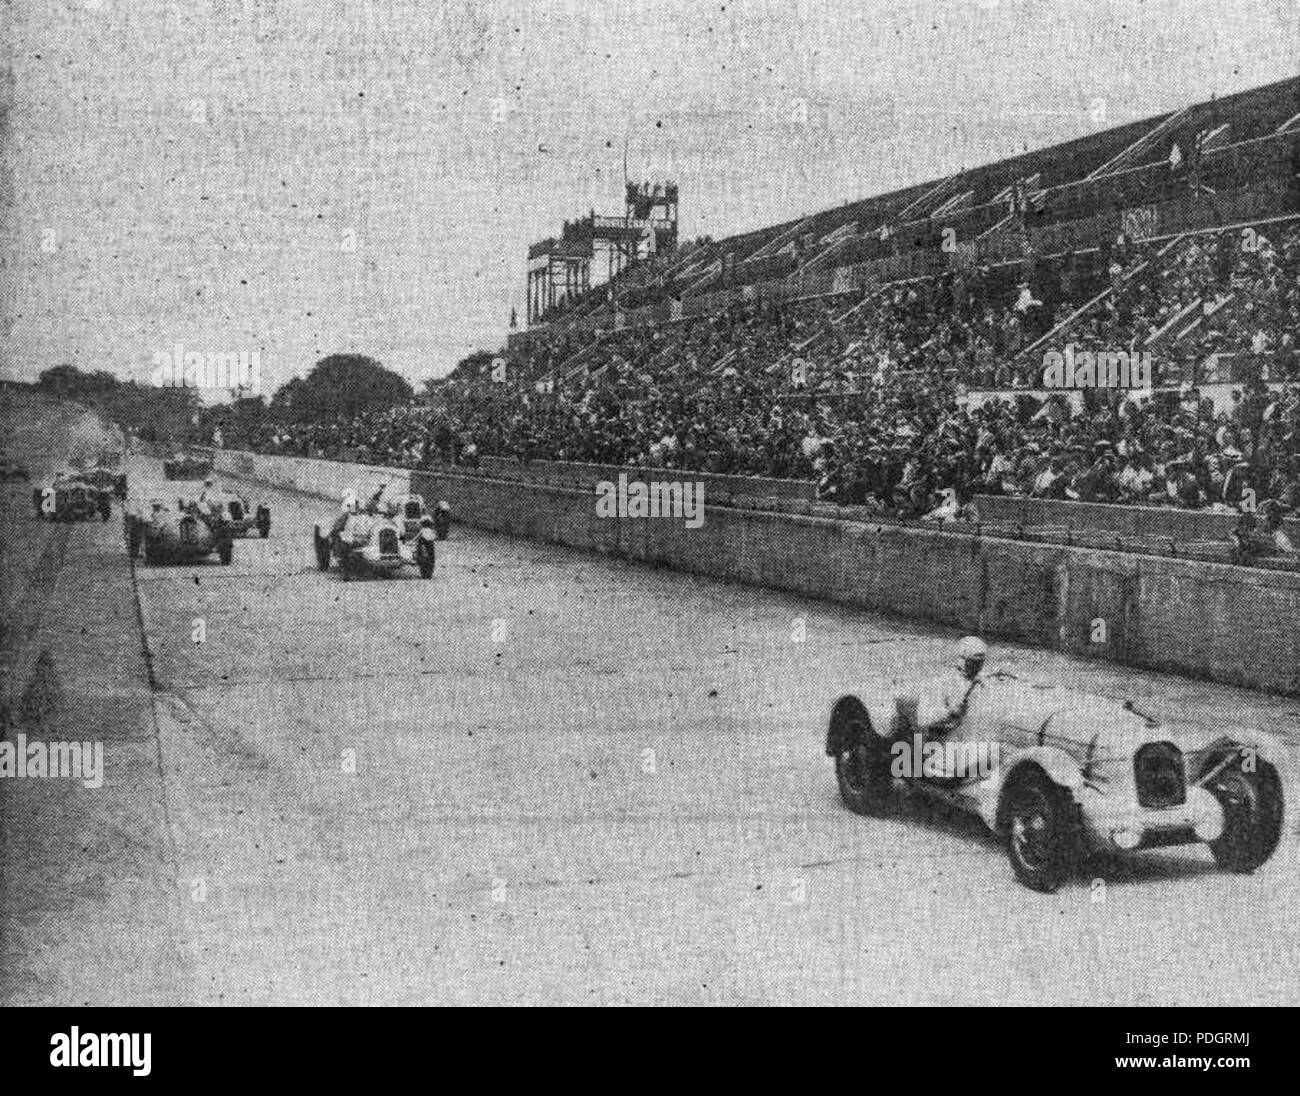 202 Le Grand Prix de l'A.C.F. en 1937, Raymond Sommer en Tête au premier tour Foto de stock